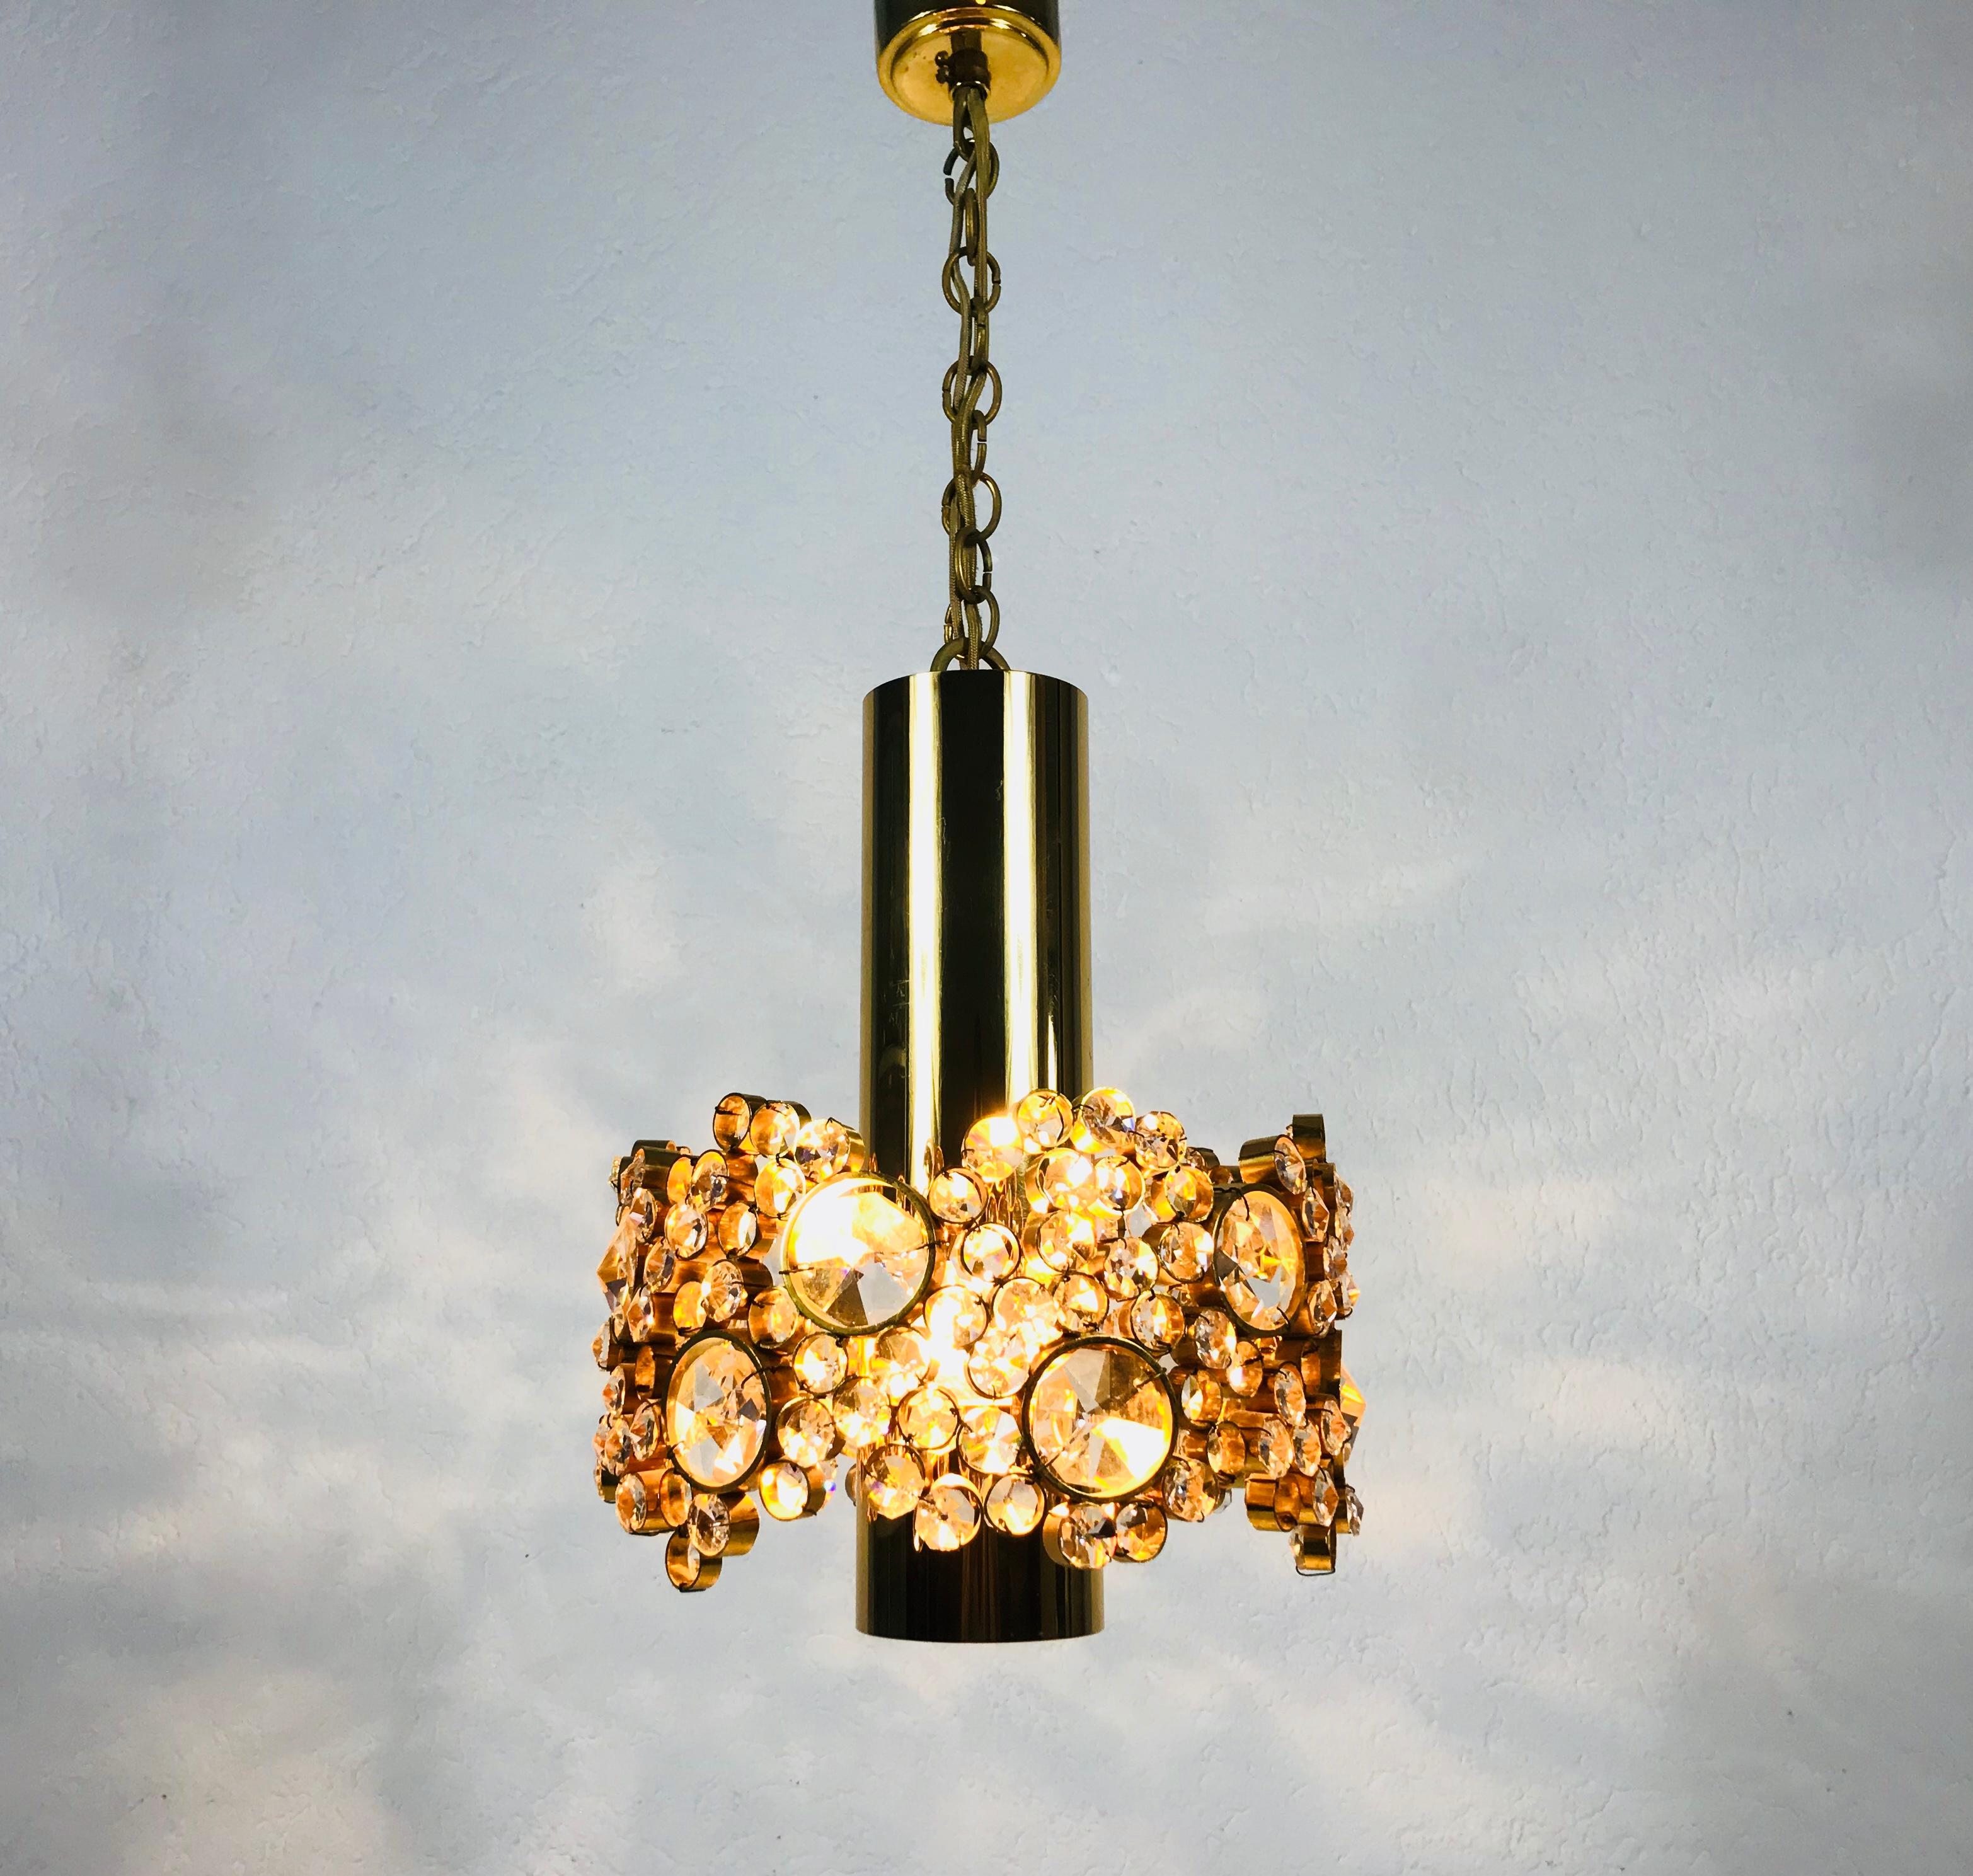 Eine außergewöhnliche Pendelleuchte von Palwa, die in den 1970er Jahren in Deutschland hergestellt wurde. Die Lampe hat ein sehr elegantes Design. Er ist in der Zeit des Hollywood Regency angesiedelt. Runder vergoldeter Messingkörper mit einer